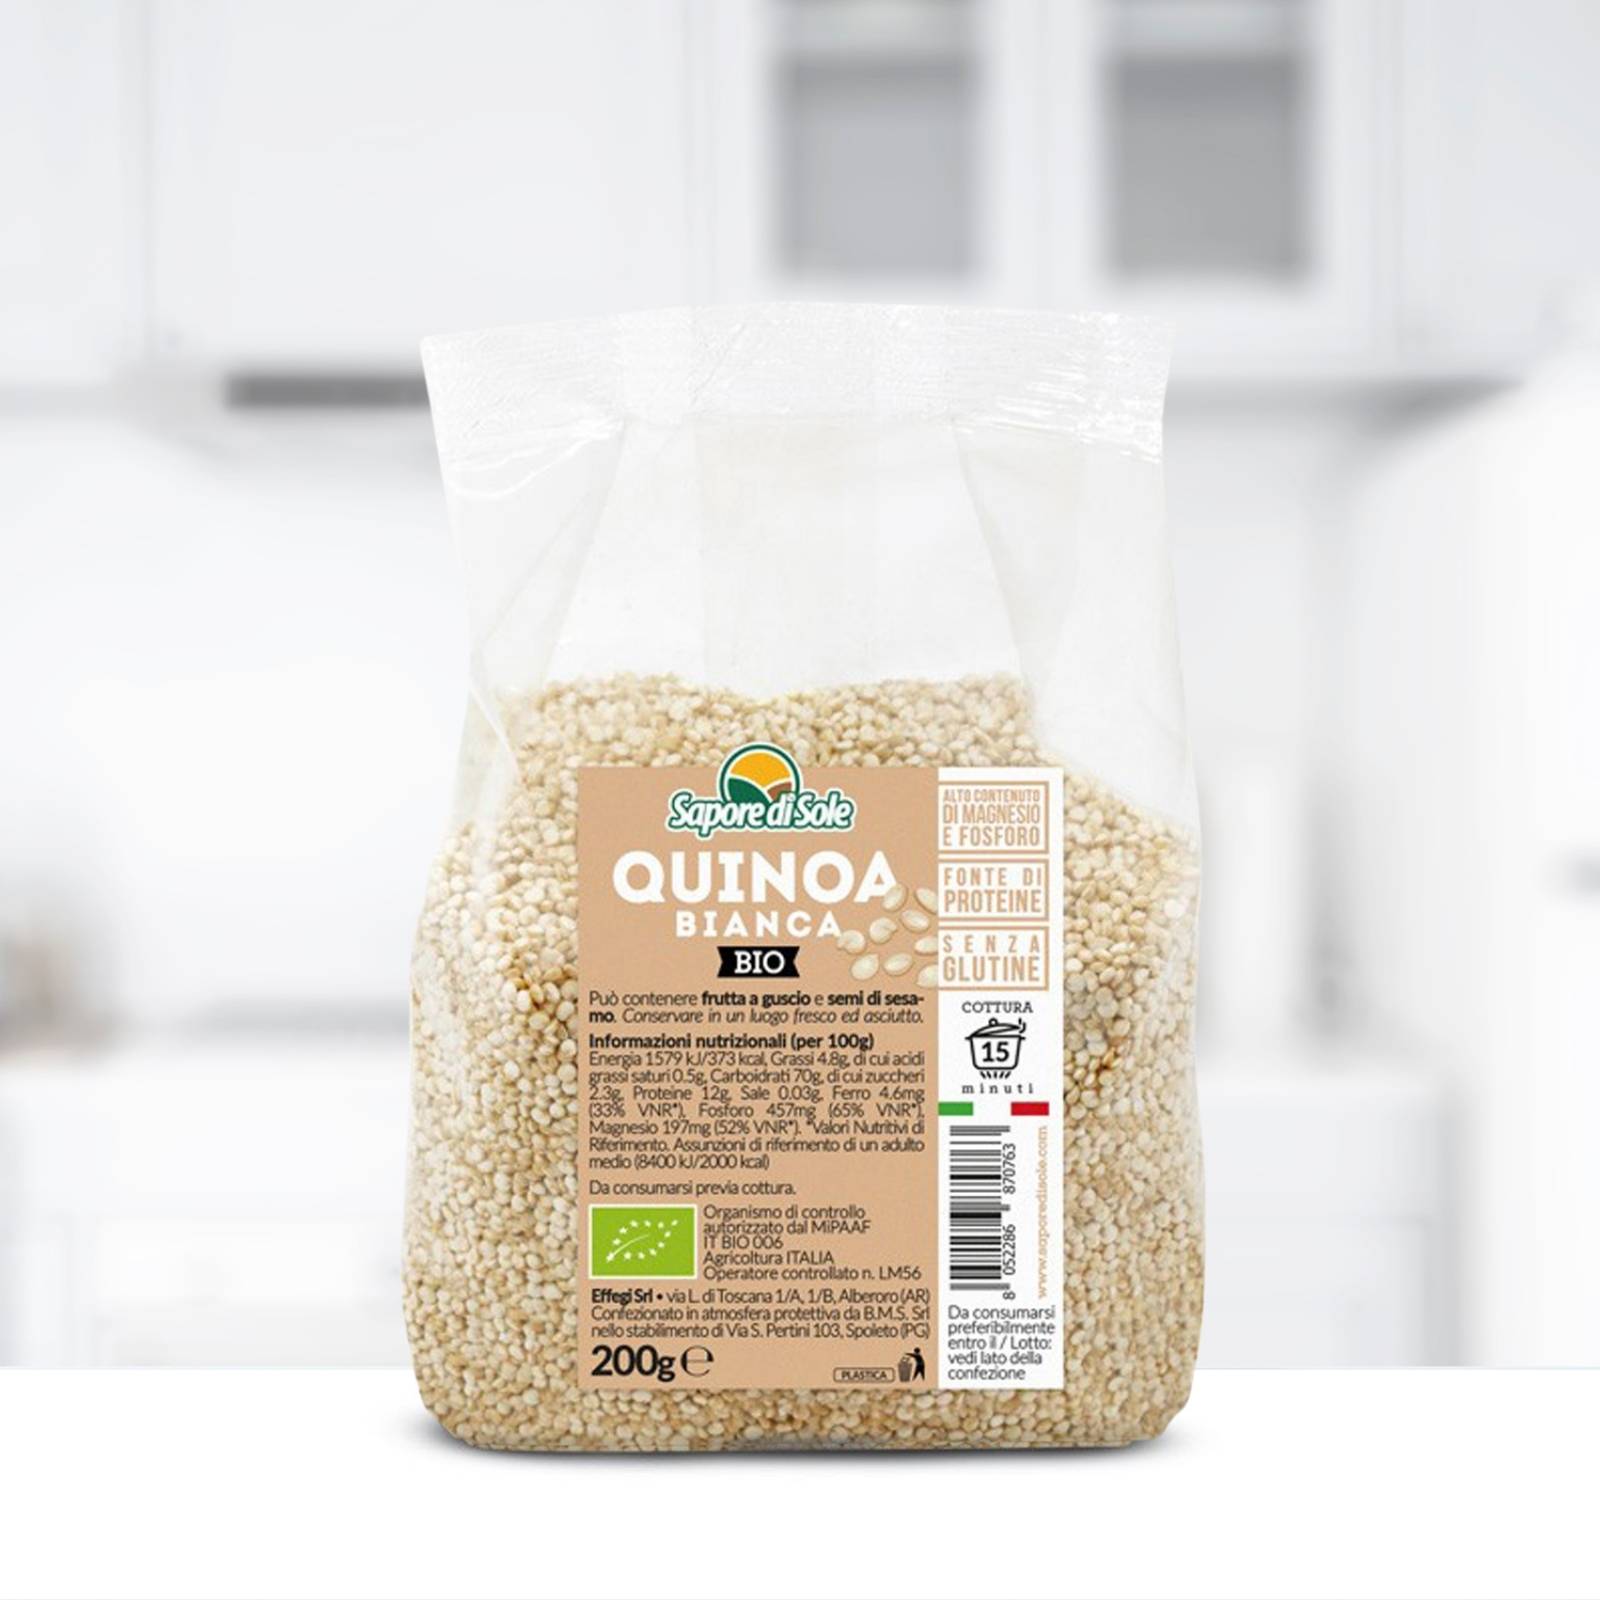 Quinoa Bianca